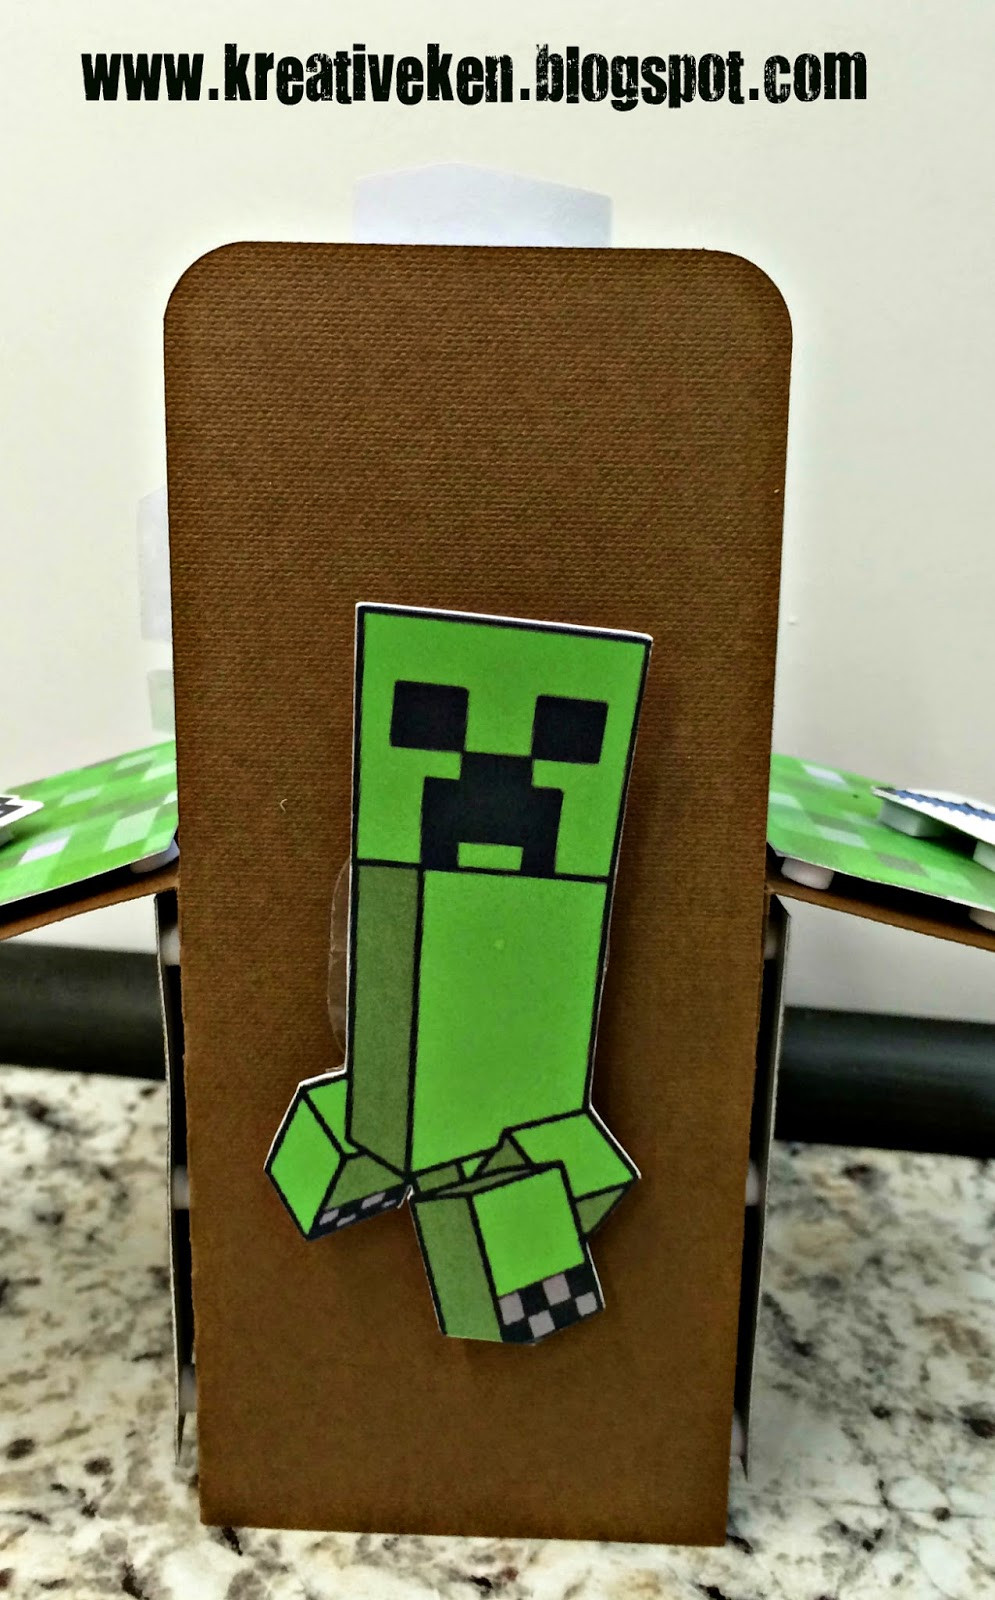 Best ideas about Minecraft Birthday Card
. Save or Pin MINECRAFT BIRTHDAY CARD Now.